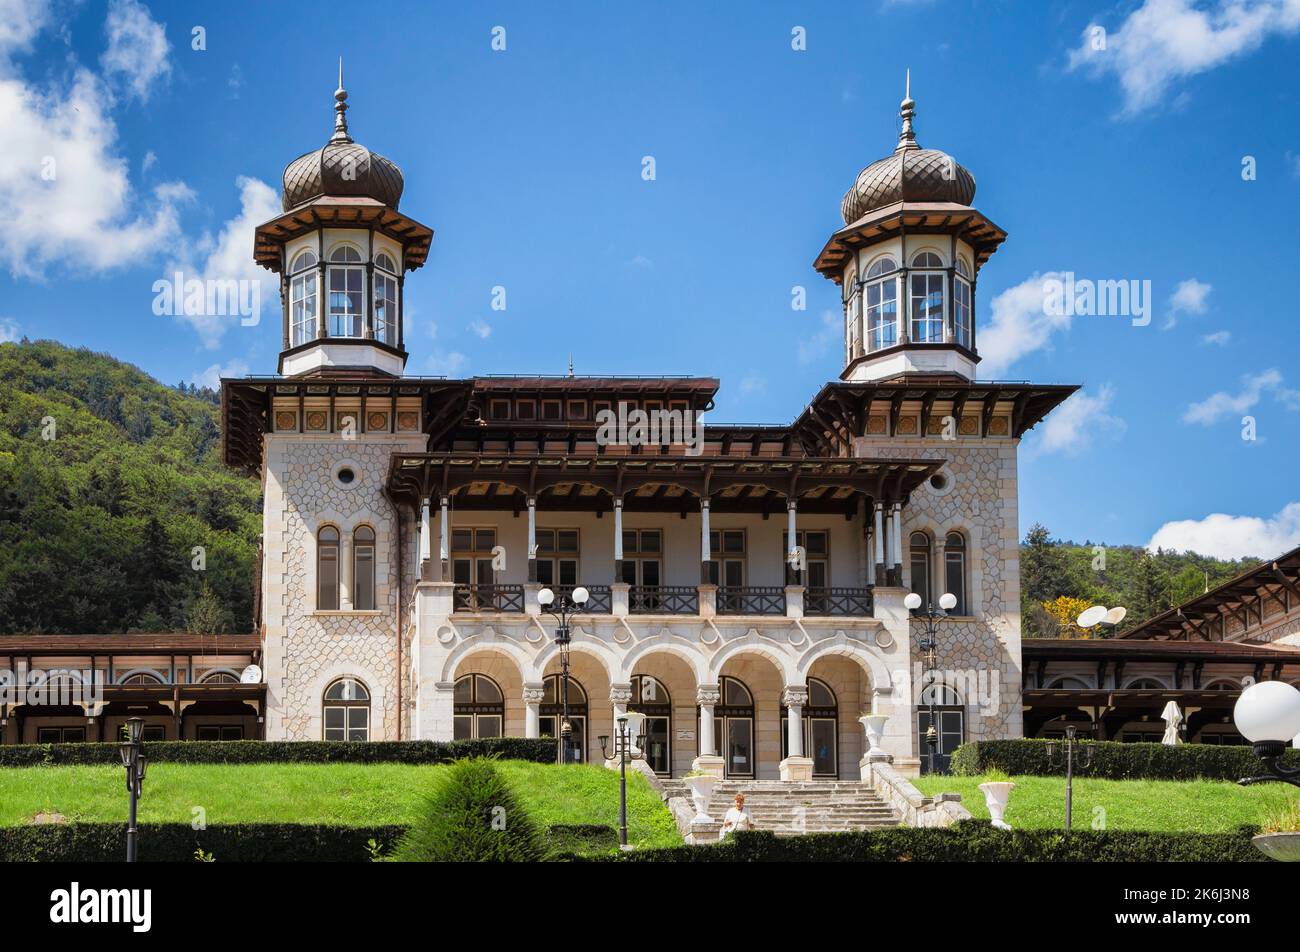 MOLDAVIE SLANIQUE, BACAU, ROUMANIE - 09 AOÛT 2018: Détails des hôtels de vieux casino et de château, à Moldavie slanique, Roumanie Banque D'Images